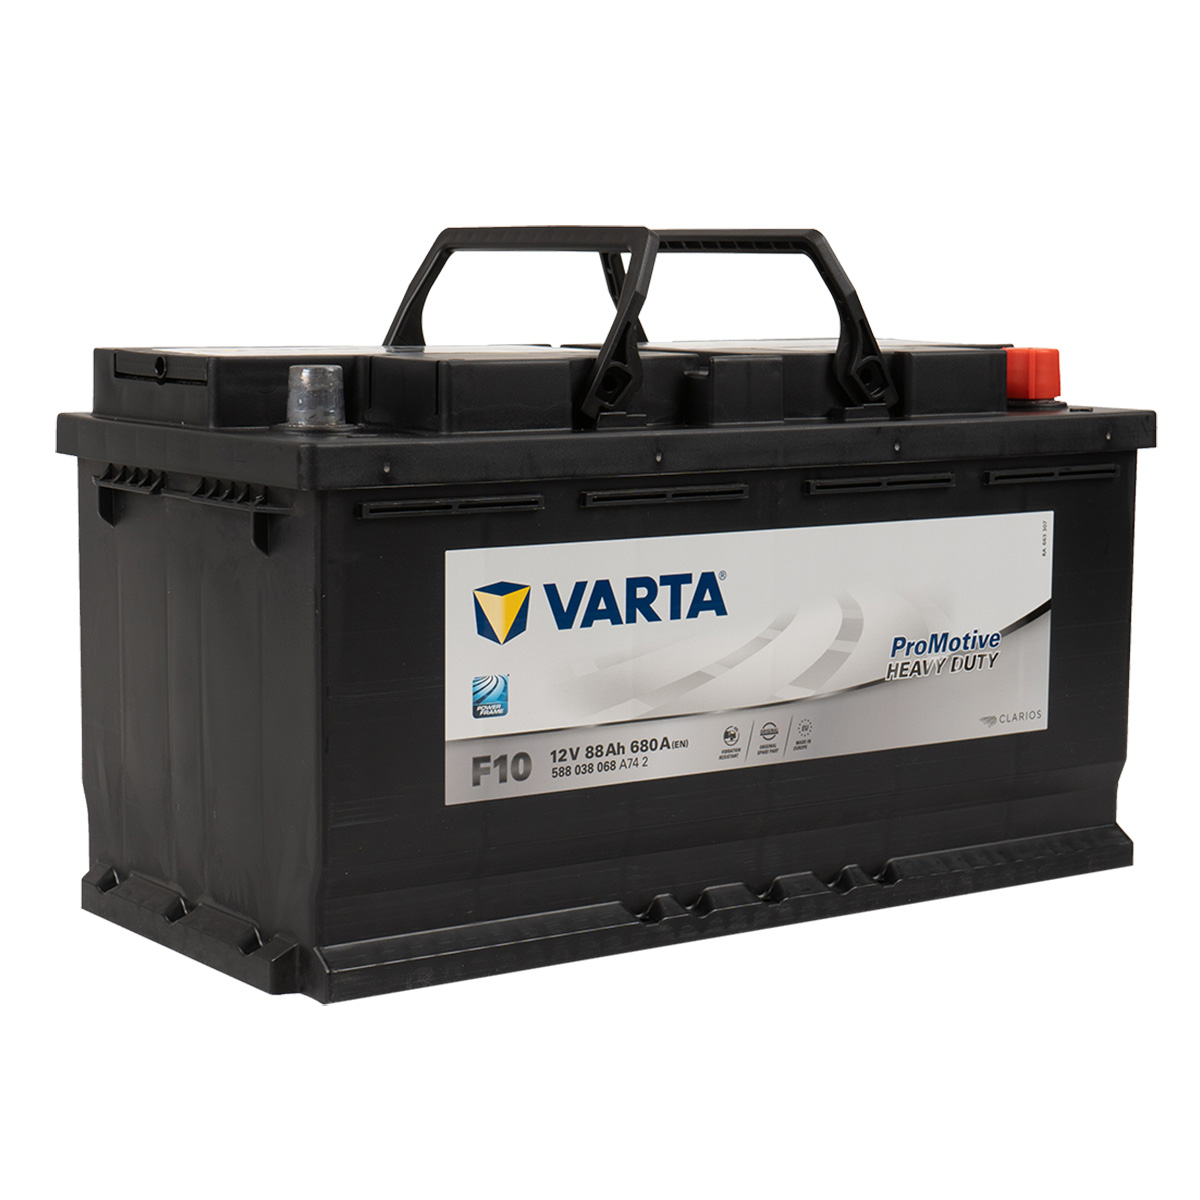 VARTA F10 ProMotive Heavy Duty 88Ah 680A LKW Batterie 588 038 068